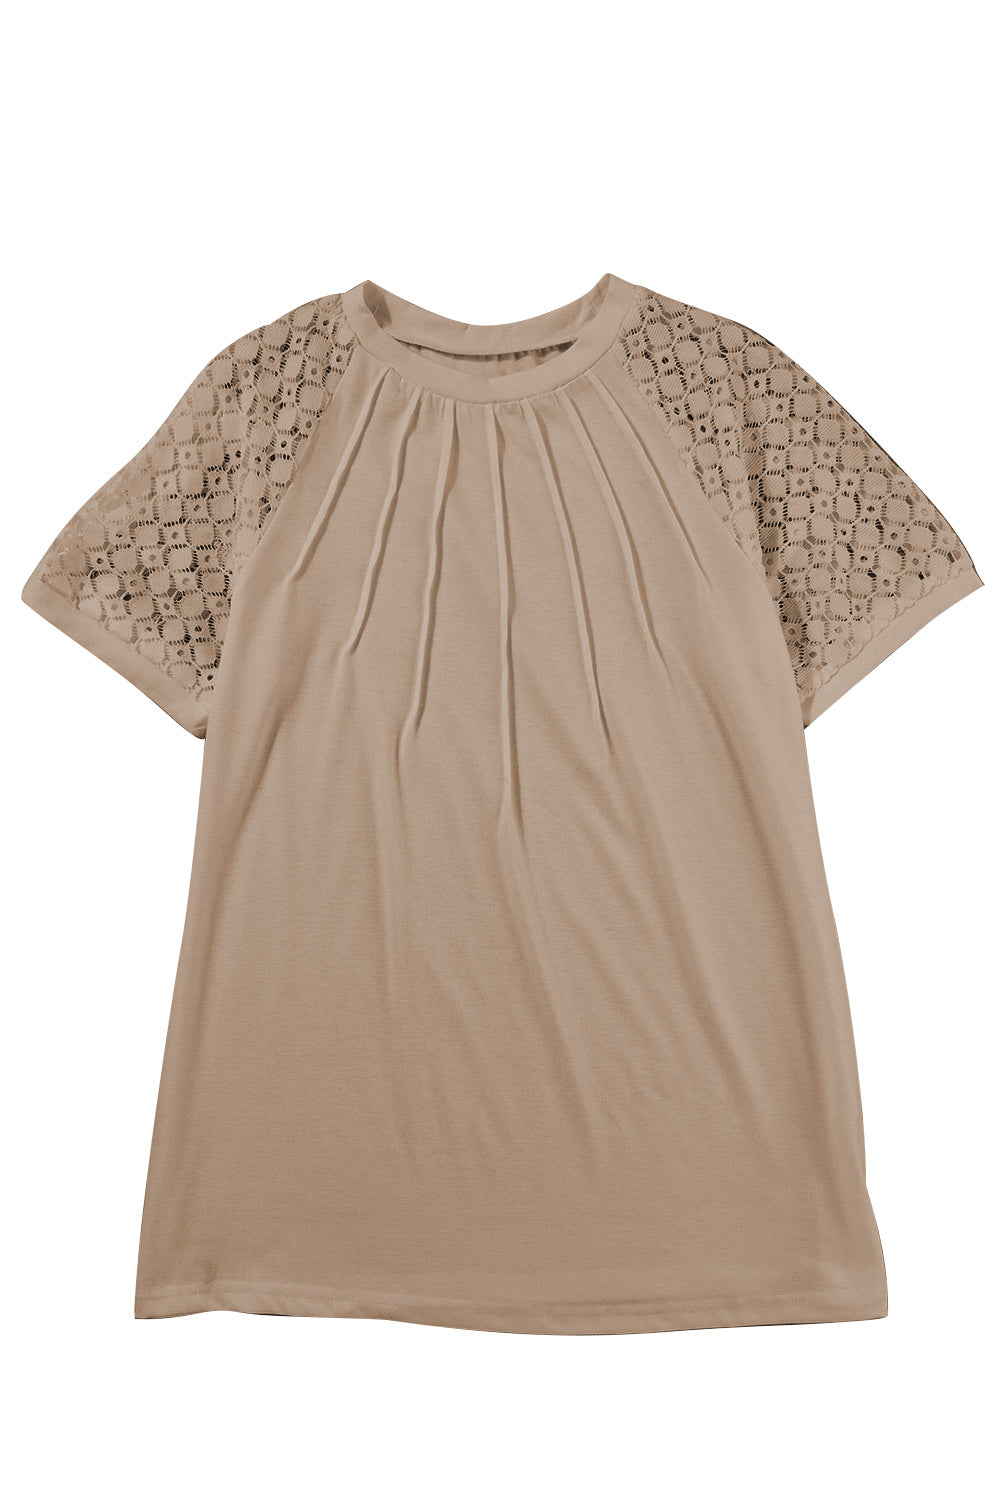 T-shirt à manches raglan en dentelle contrastée kaki pâle avec coutures contrastées